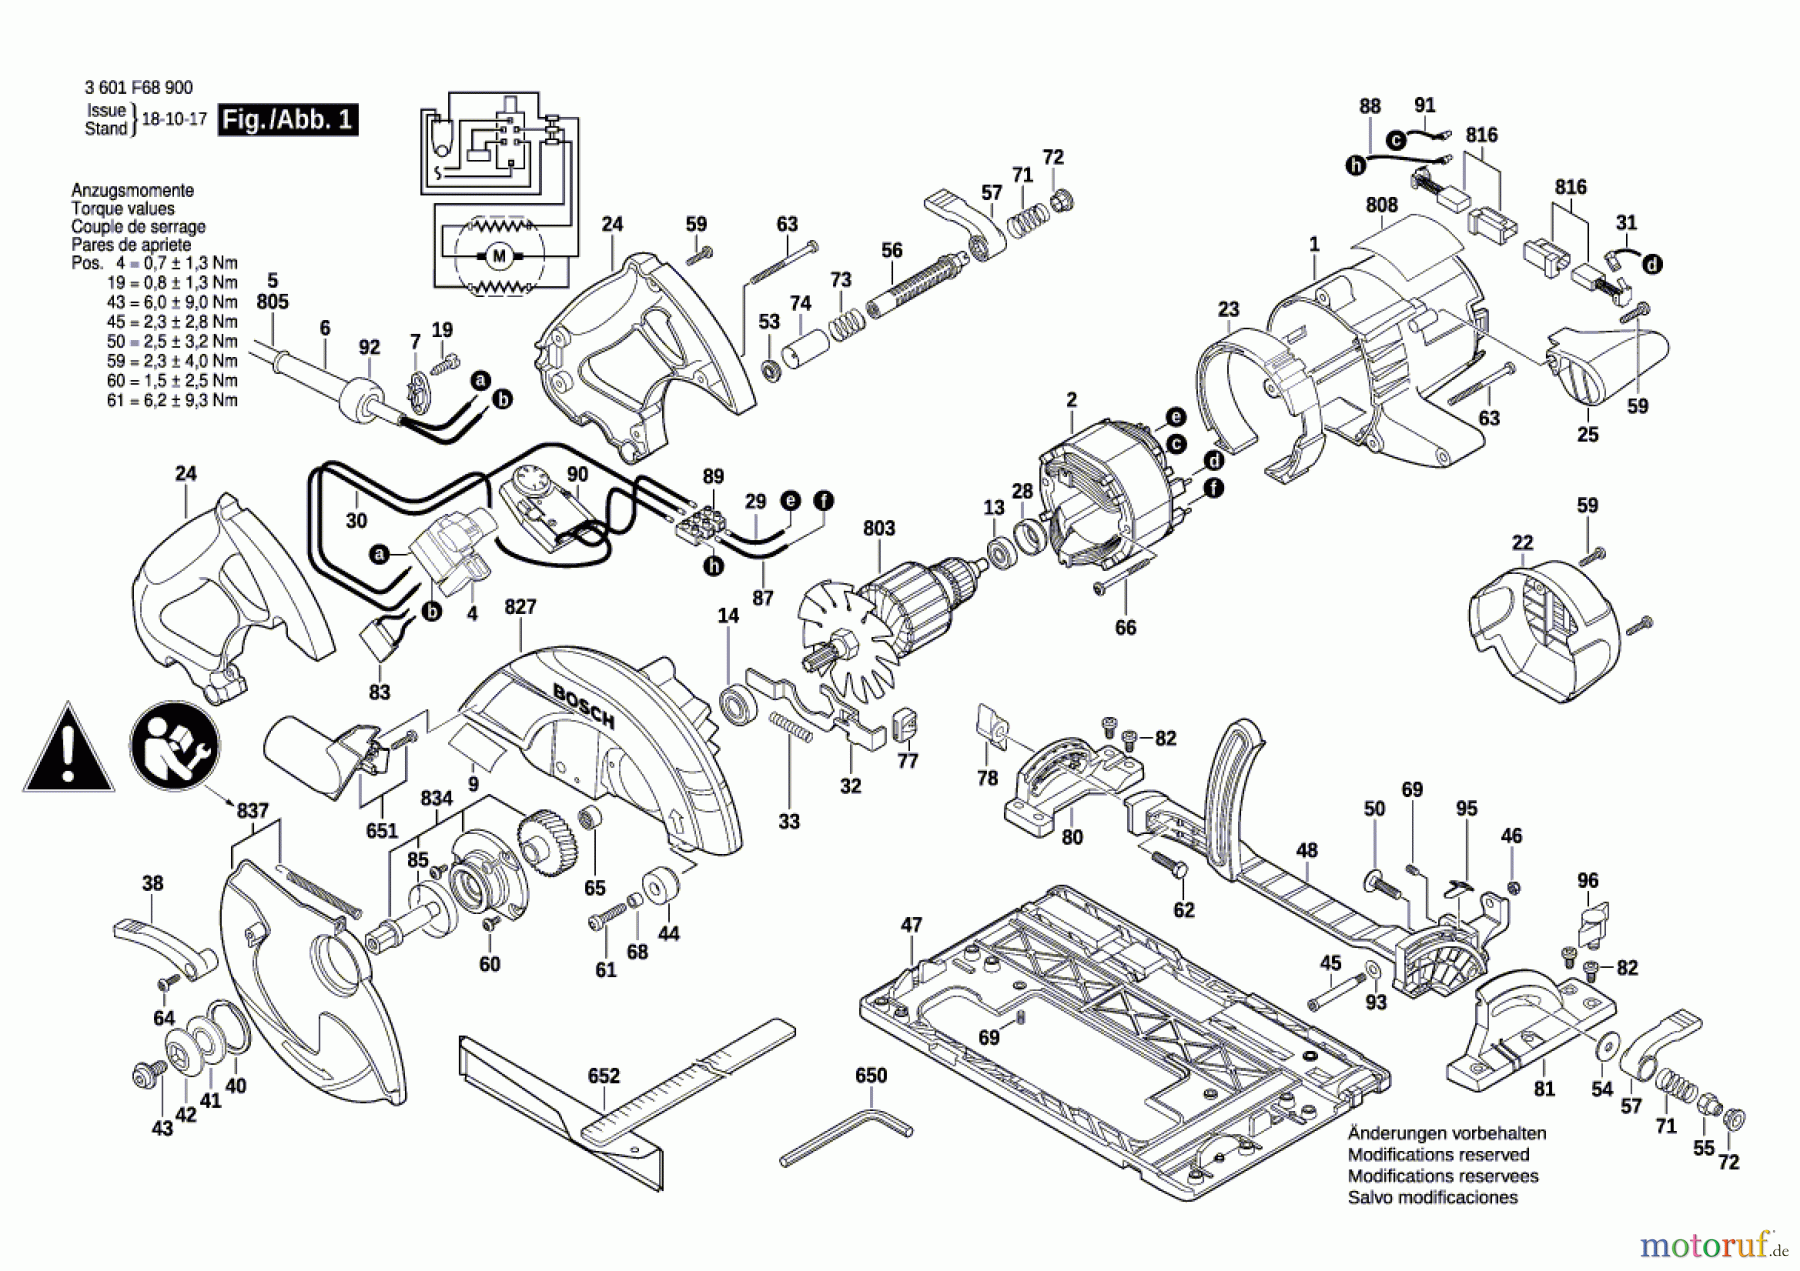  Bosch Werkzeug Handkreissäge GKS 65 GCE Seite 1